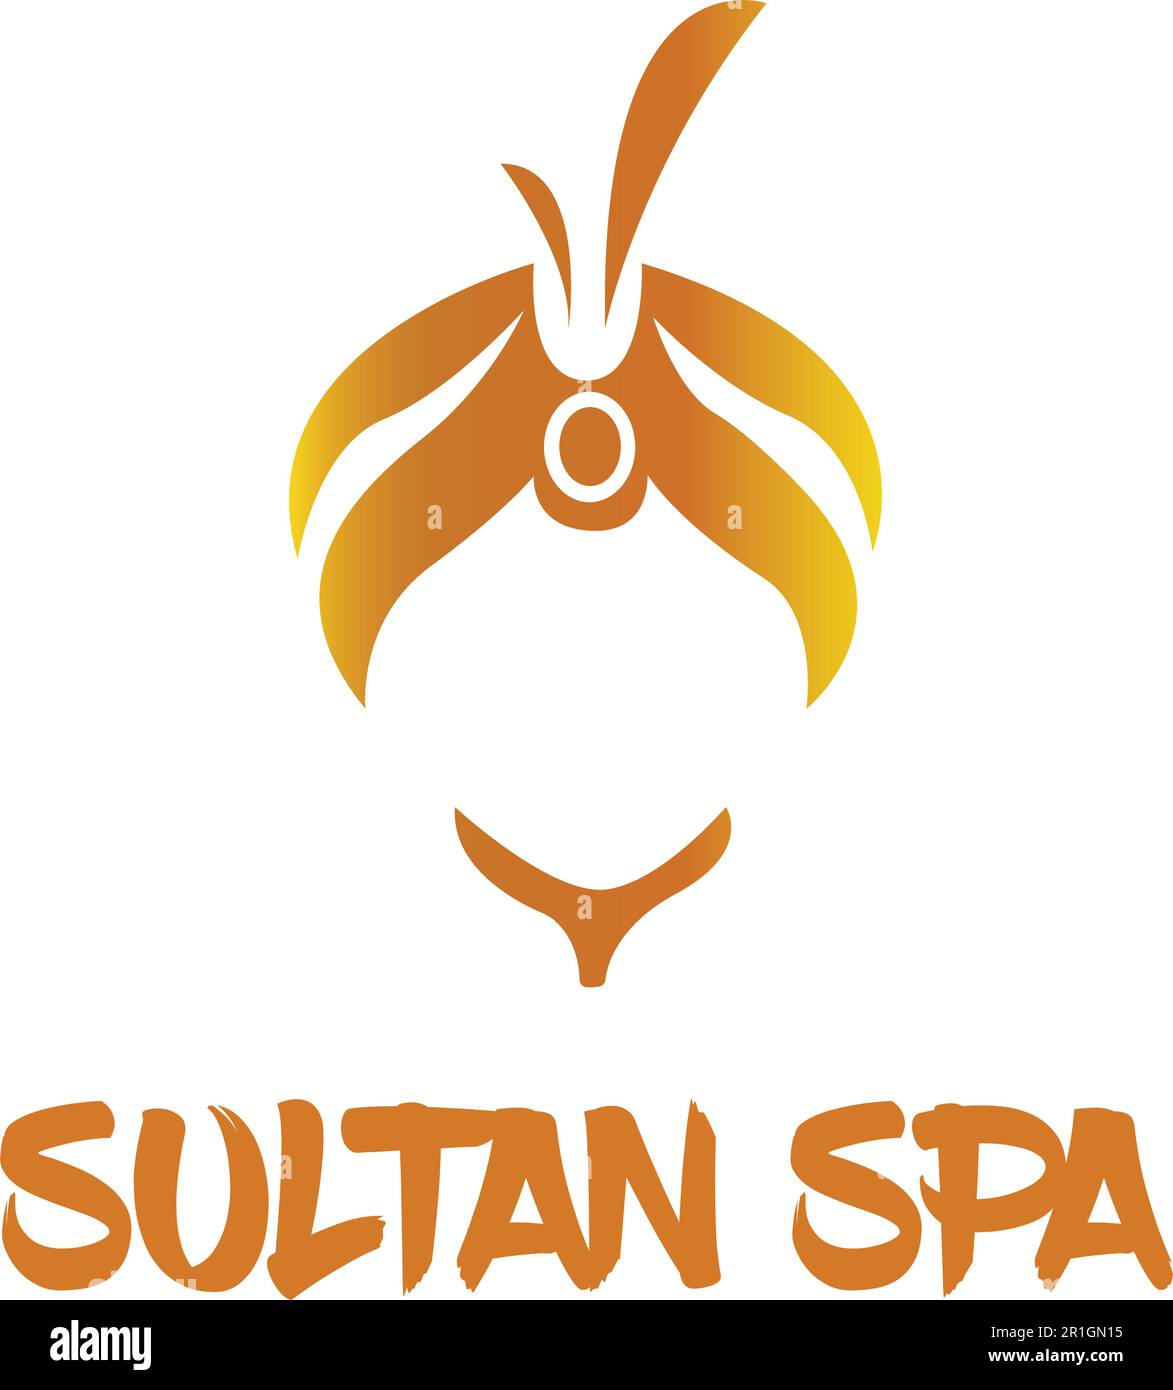 Il modello con logo Sultan Spa è un design sofisticato ed elegante che cattura l'essenza del lusso e del relax. Illustrazione Vettoriale